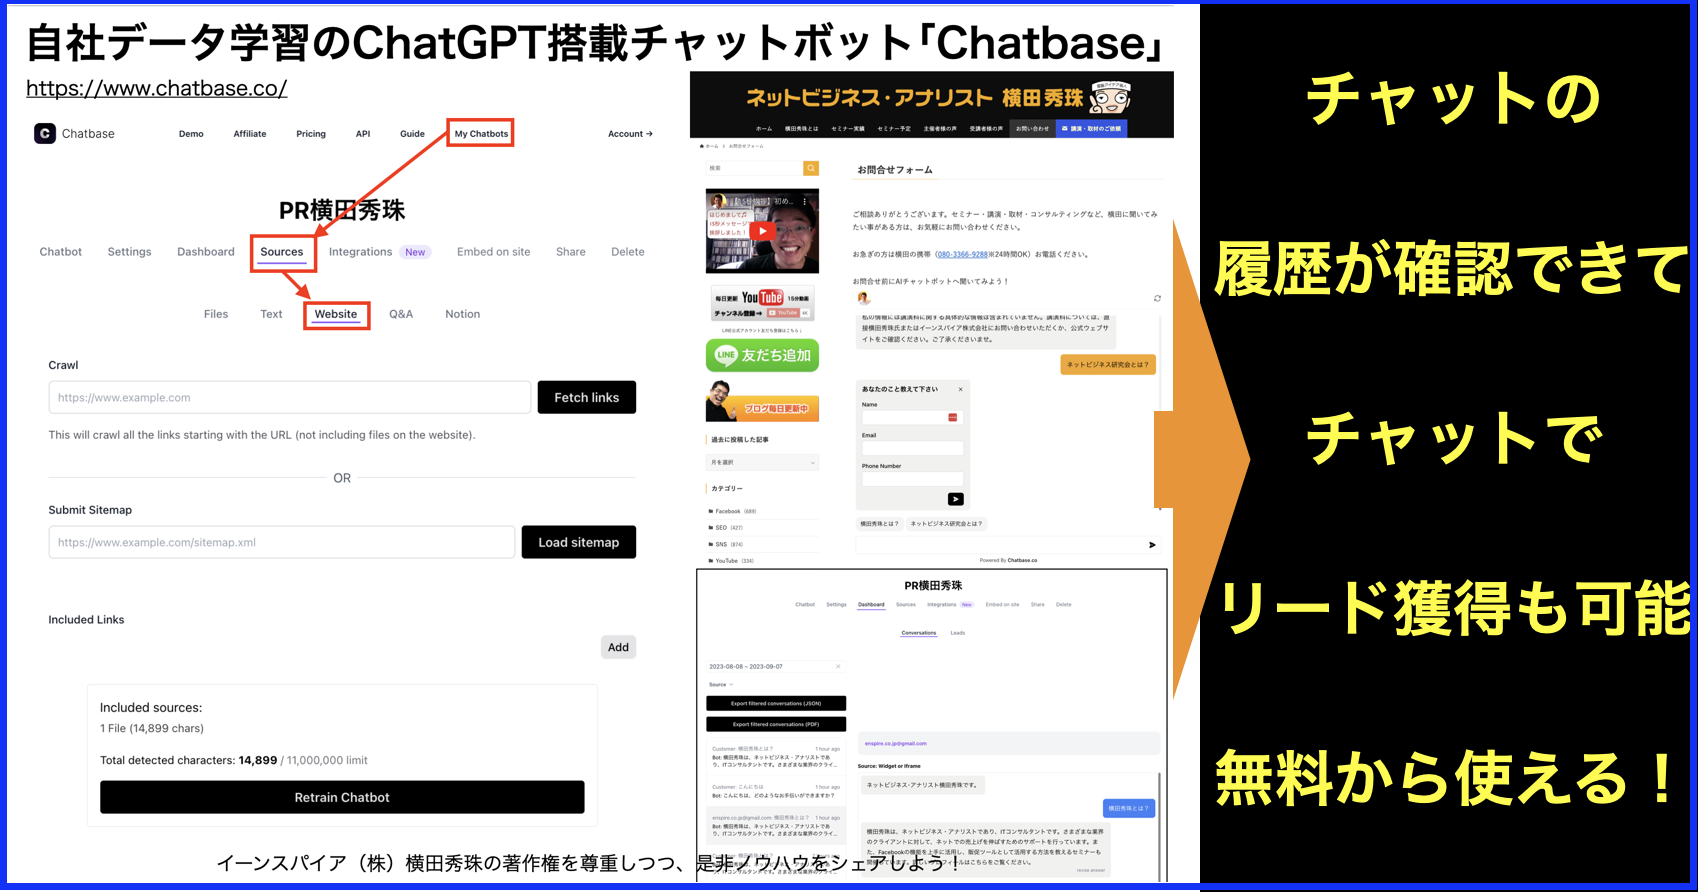 自社データ学習するChatGPT搭載チャットボット｢Chatbase｣